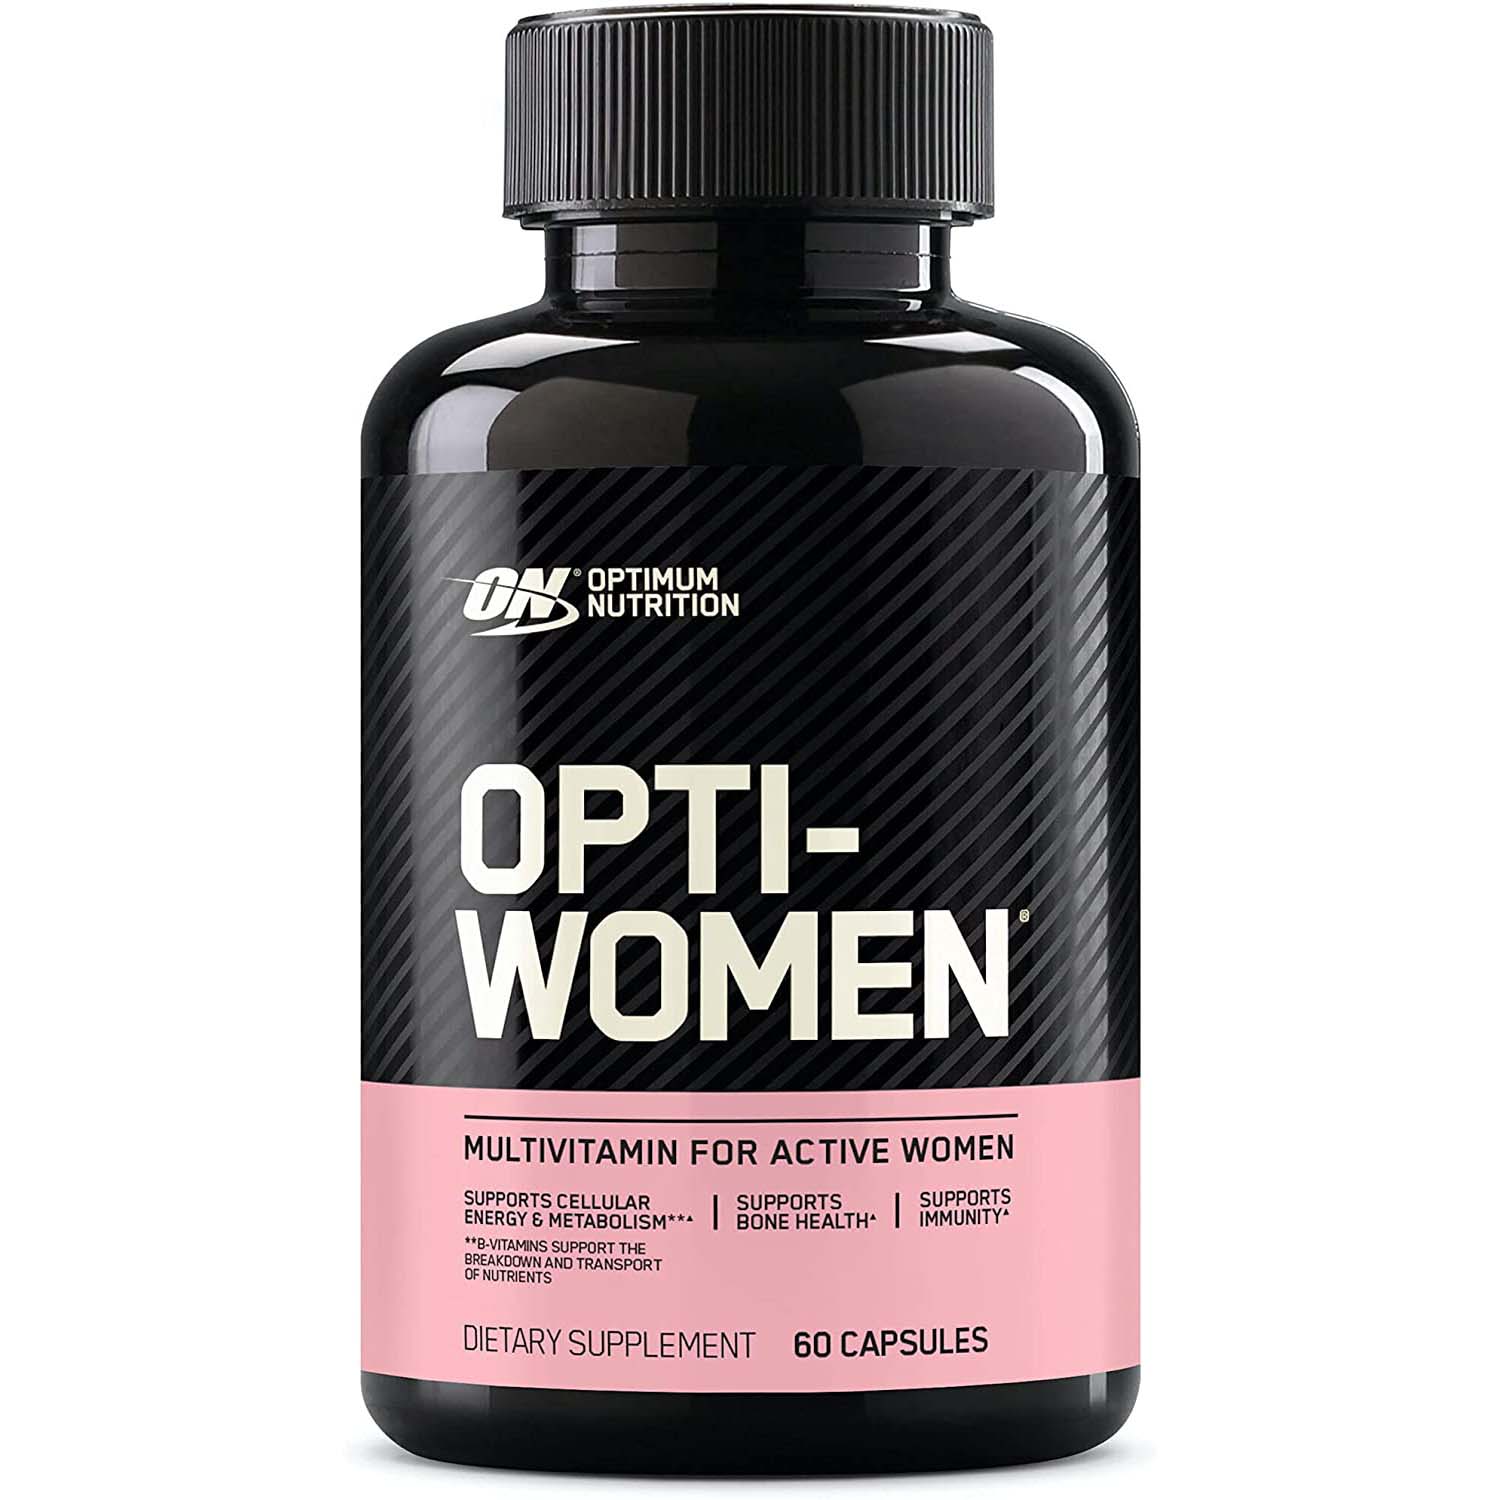 Optimum Nutrition Opti-Women Multivitamin, 60 Capsules